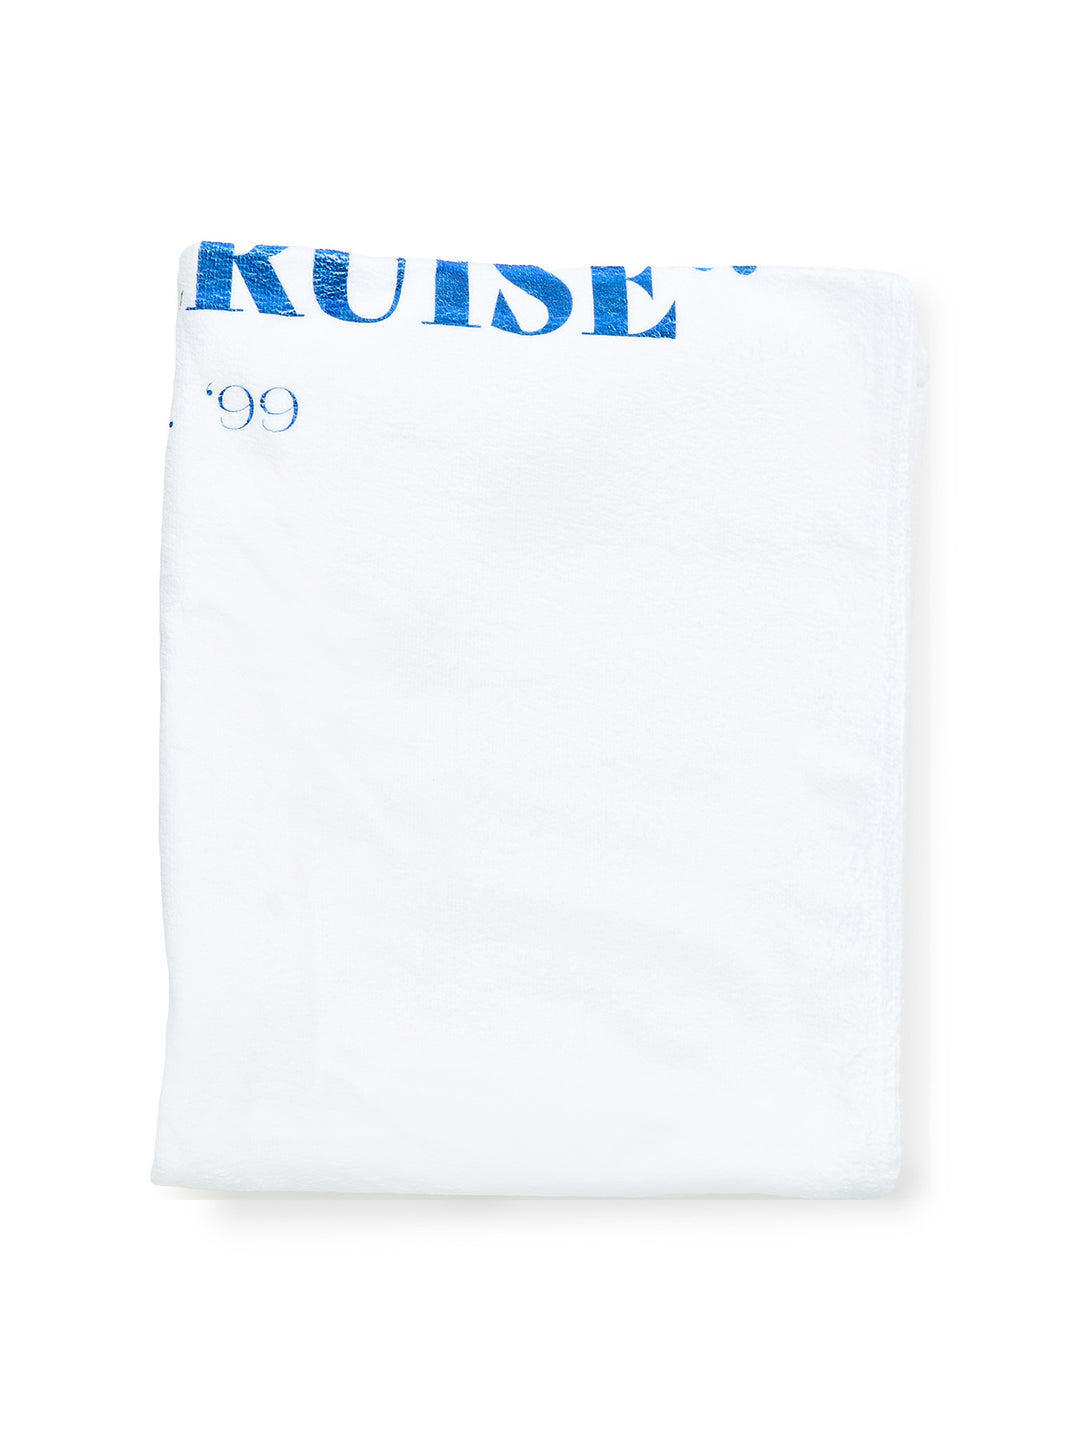 THE CRUISE - Beach Towel • White/Blue